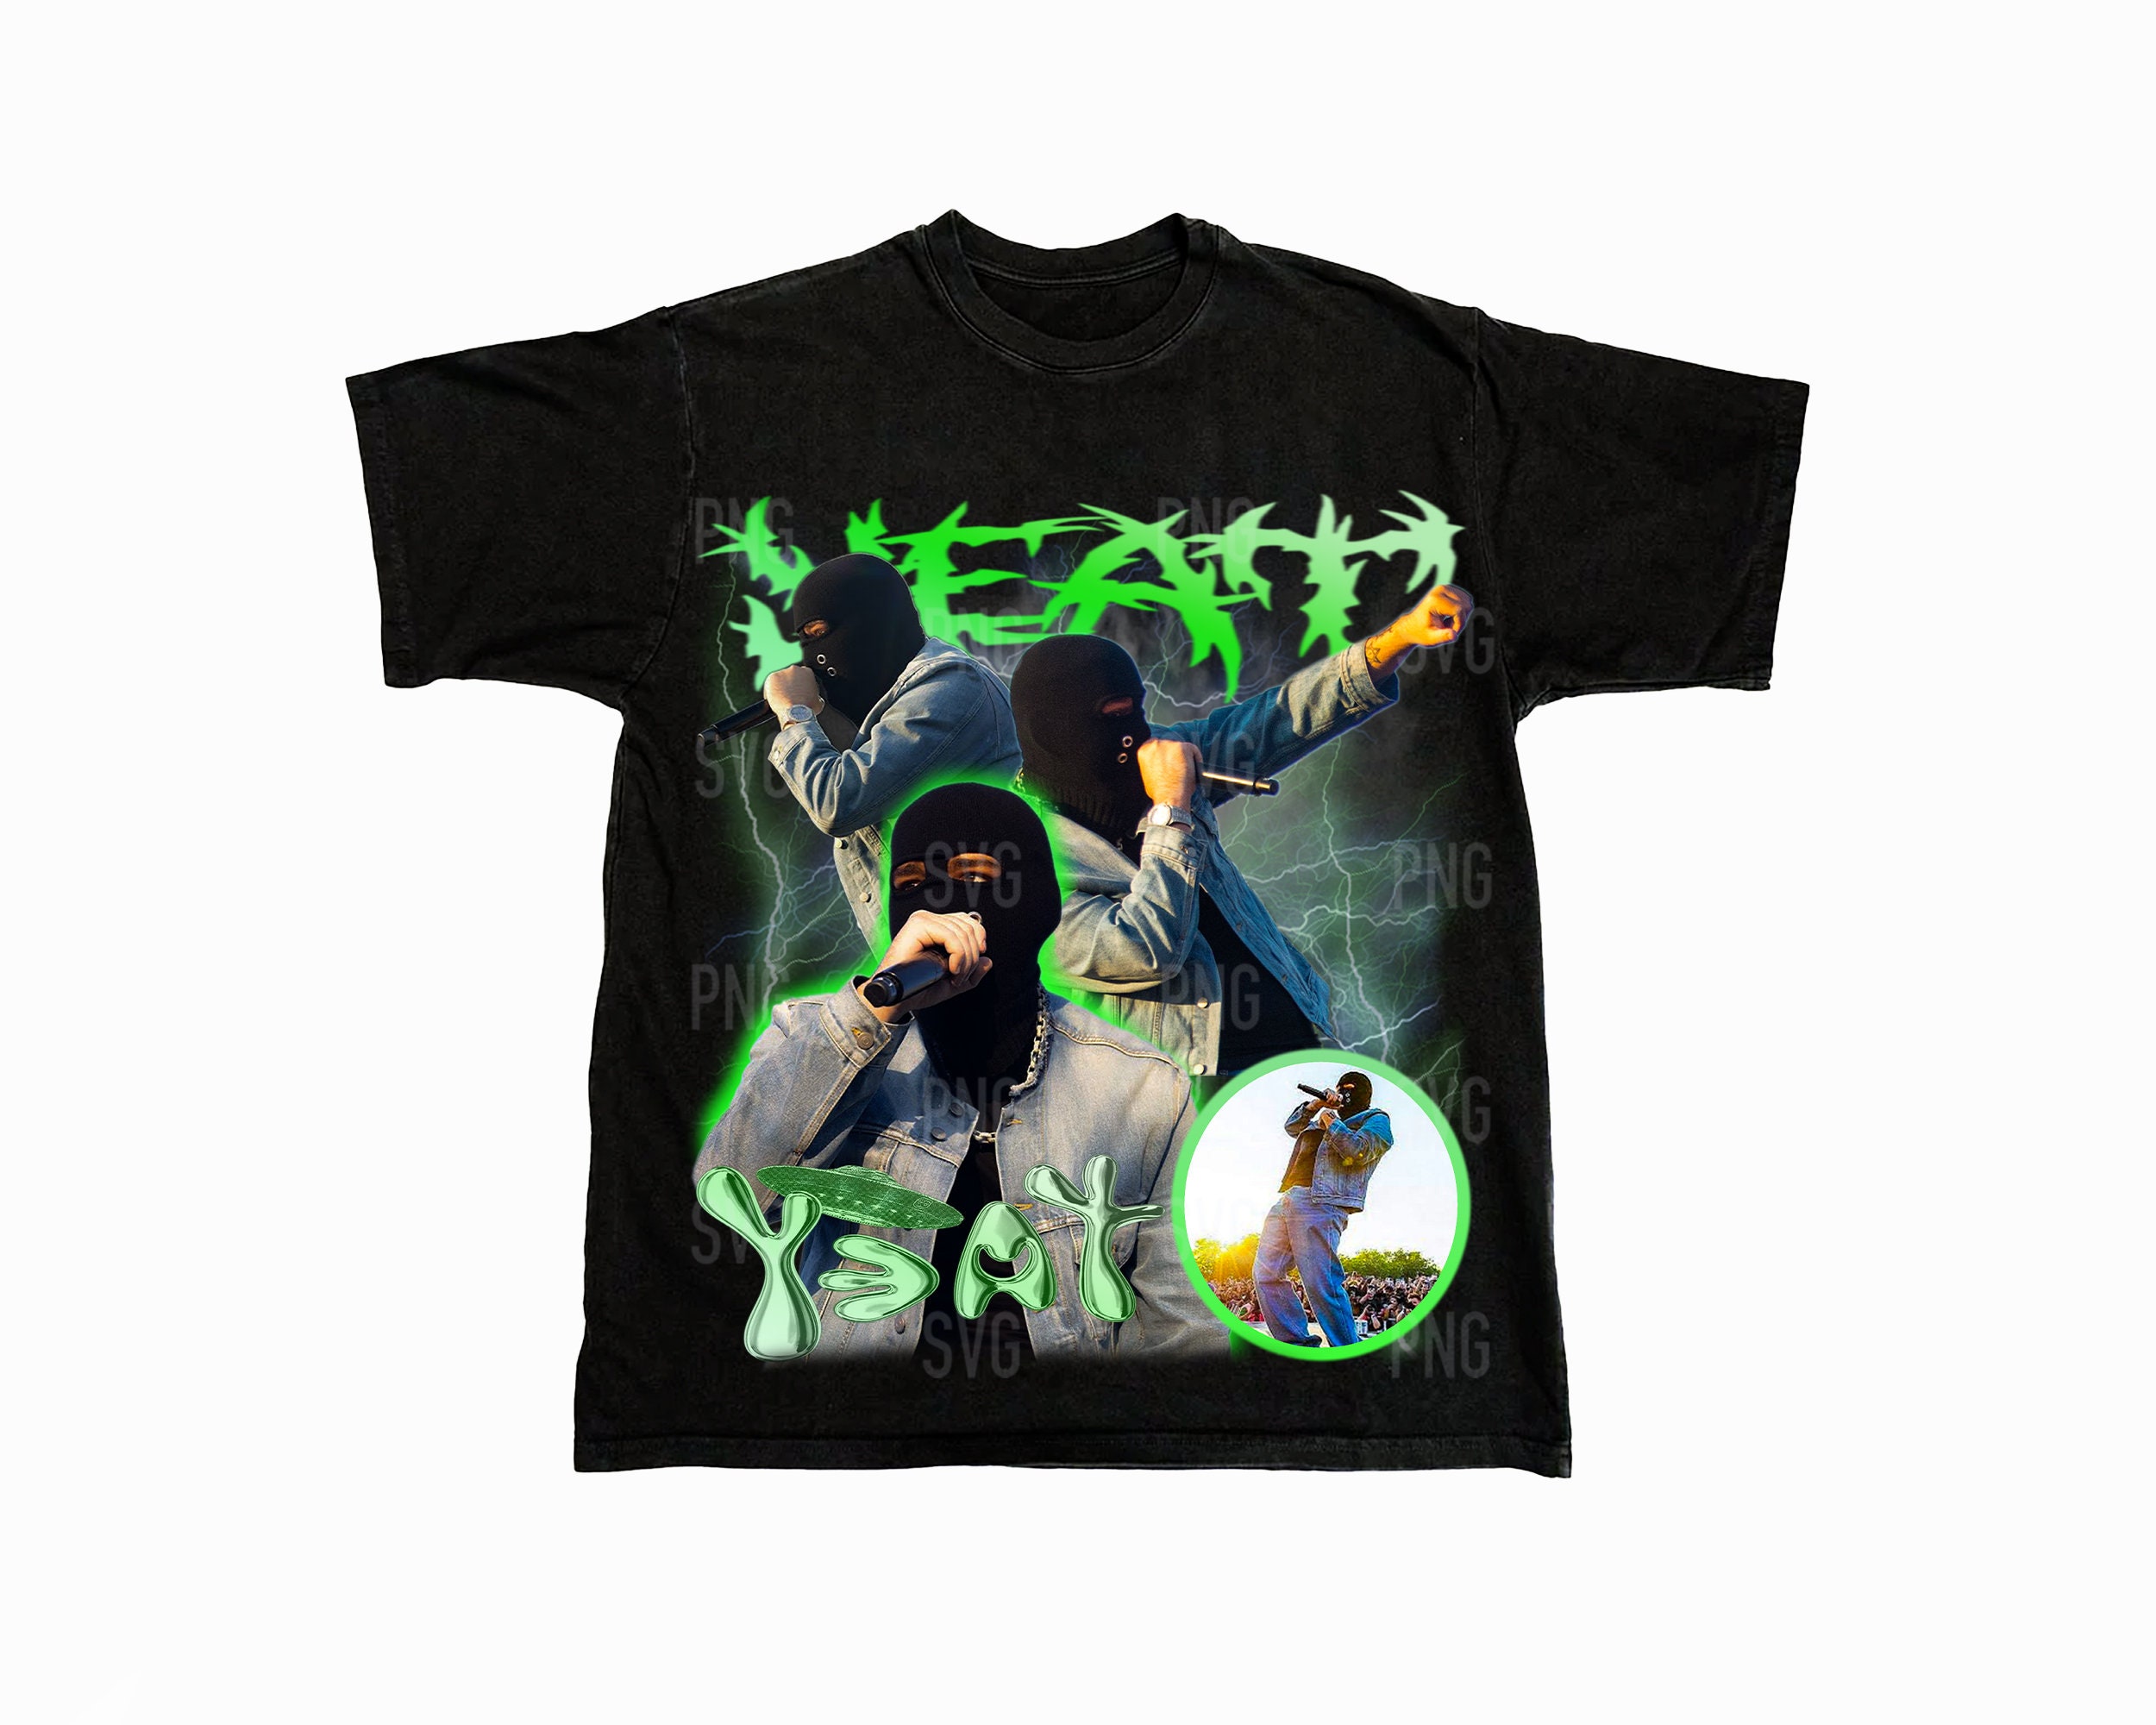 PremierCloset Yeat Album Aftërlyfe Graphic Tee, Yeat Rapper Shirt, Graphic T Shirt, Aftërlyfe